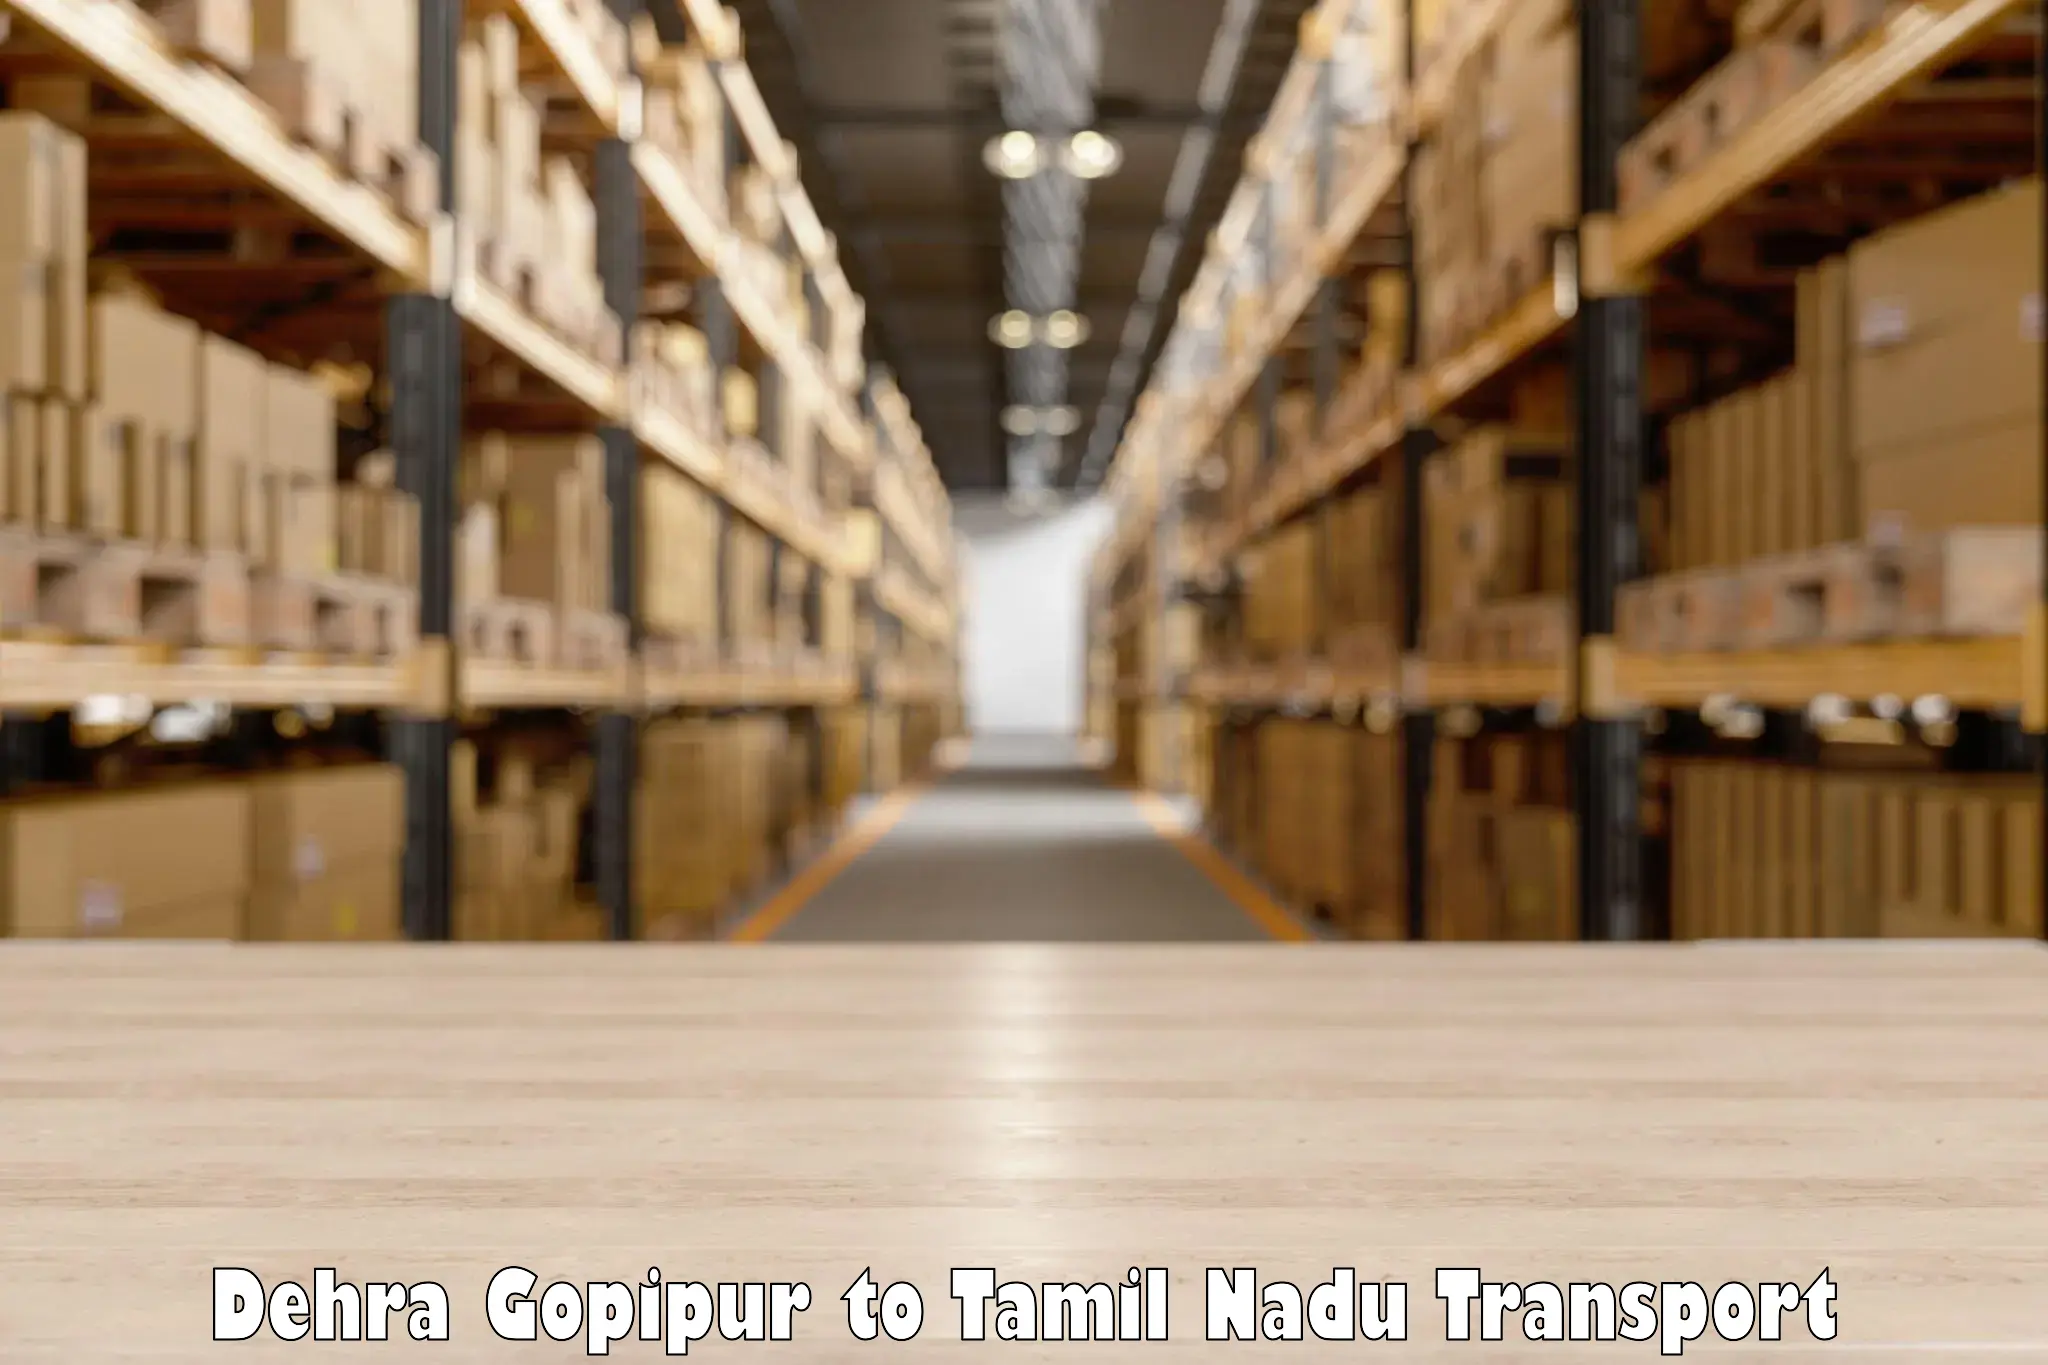 Container transport service Dehra Gopipur to Dharapuram